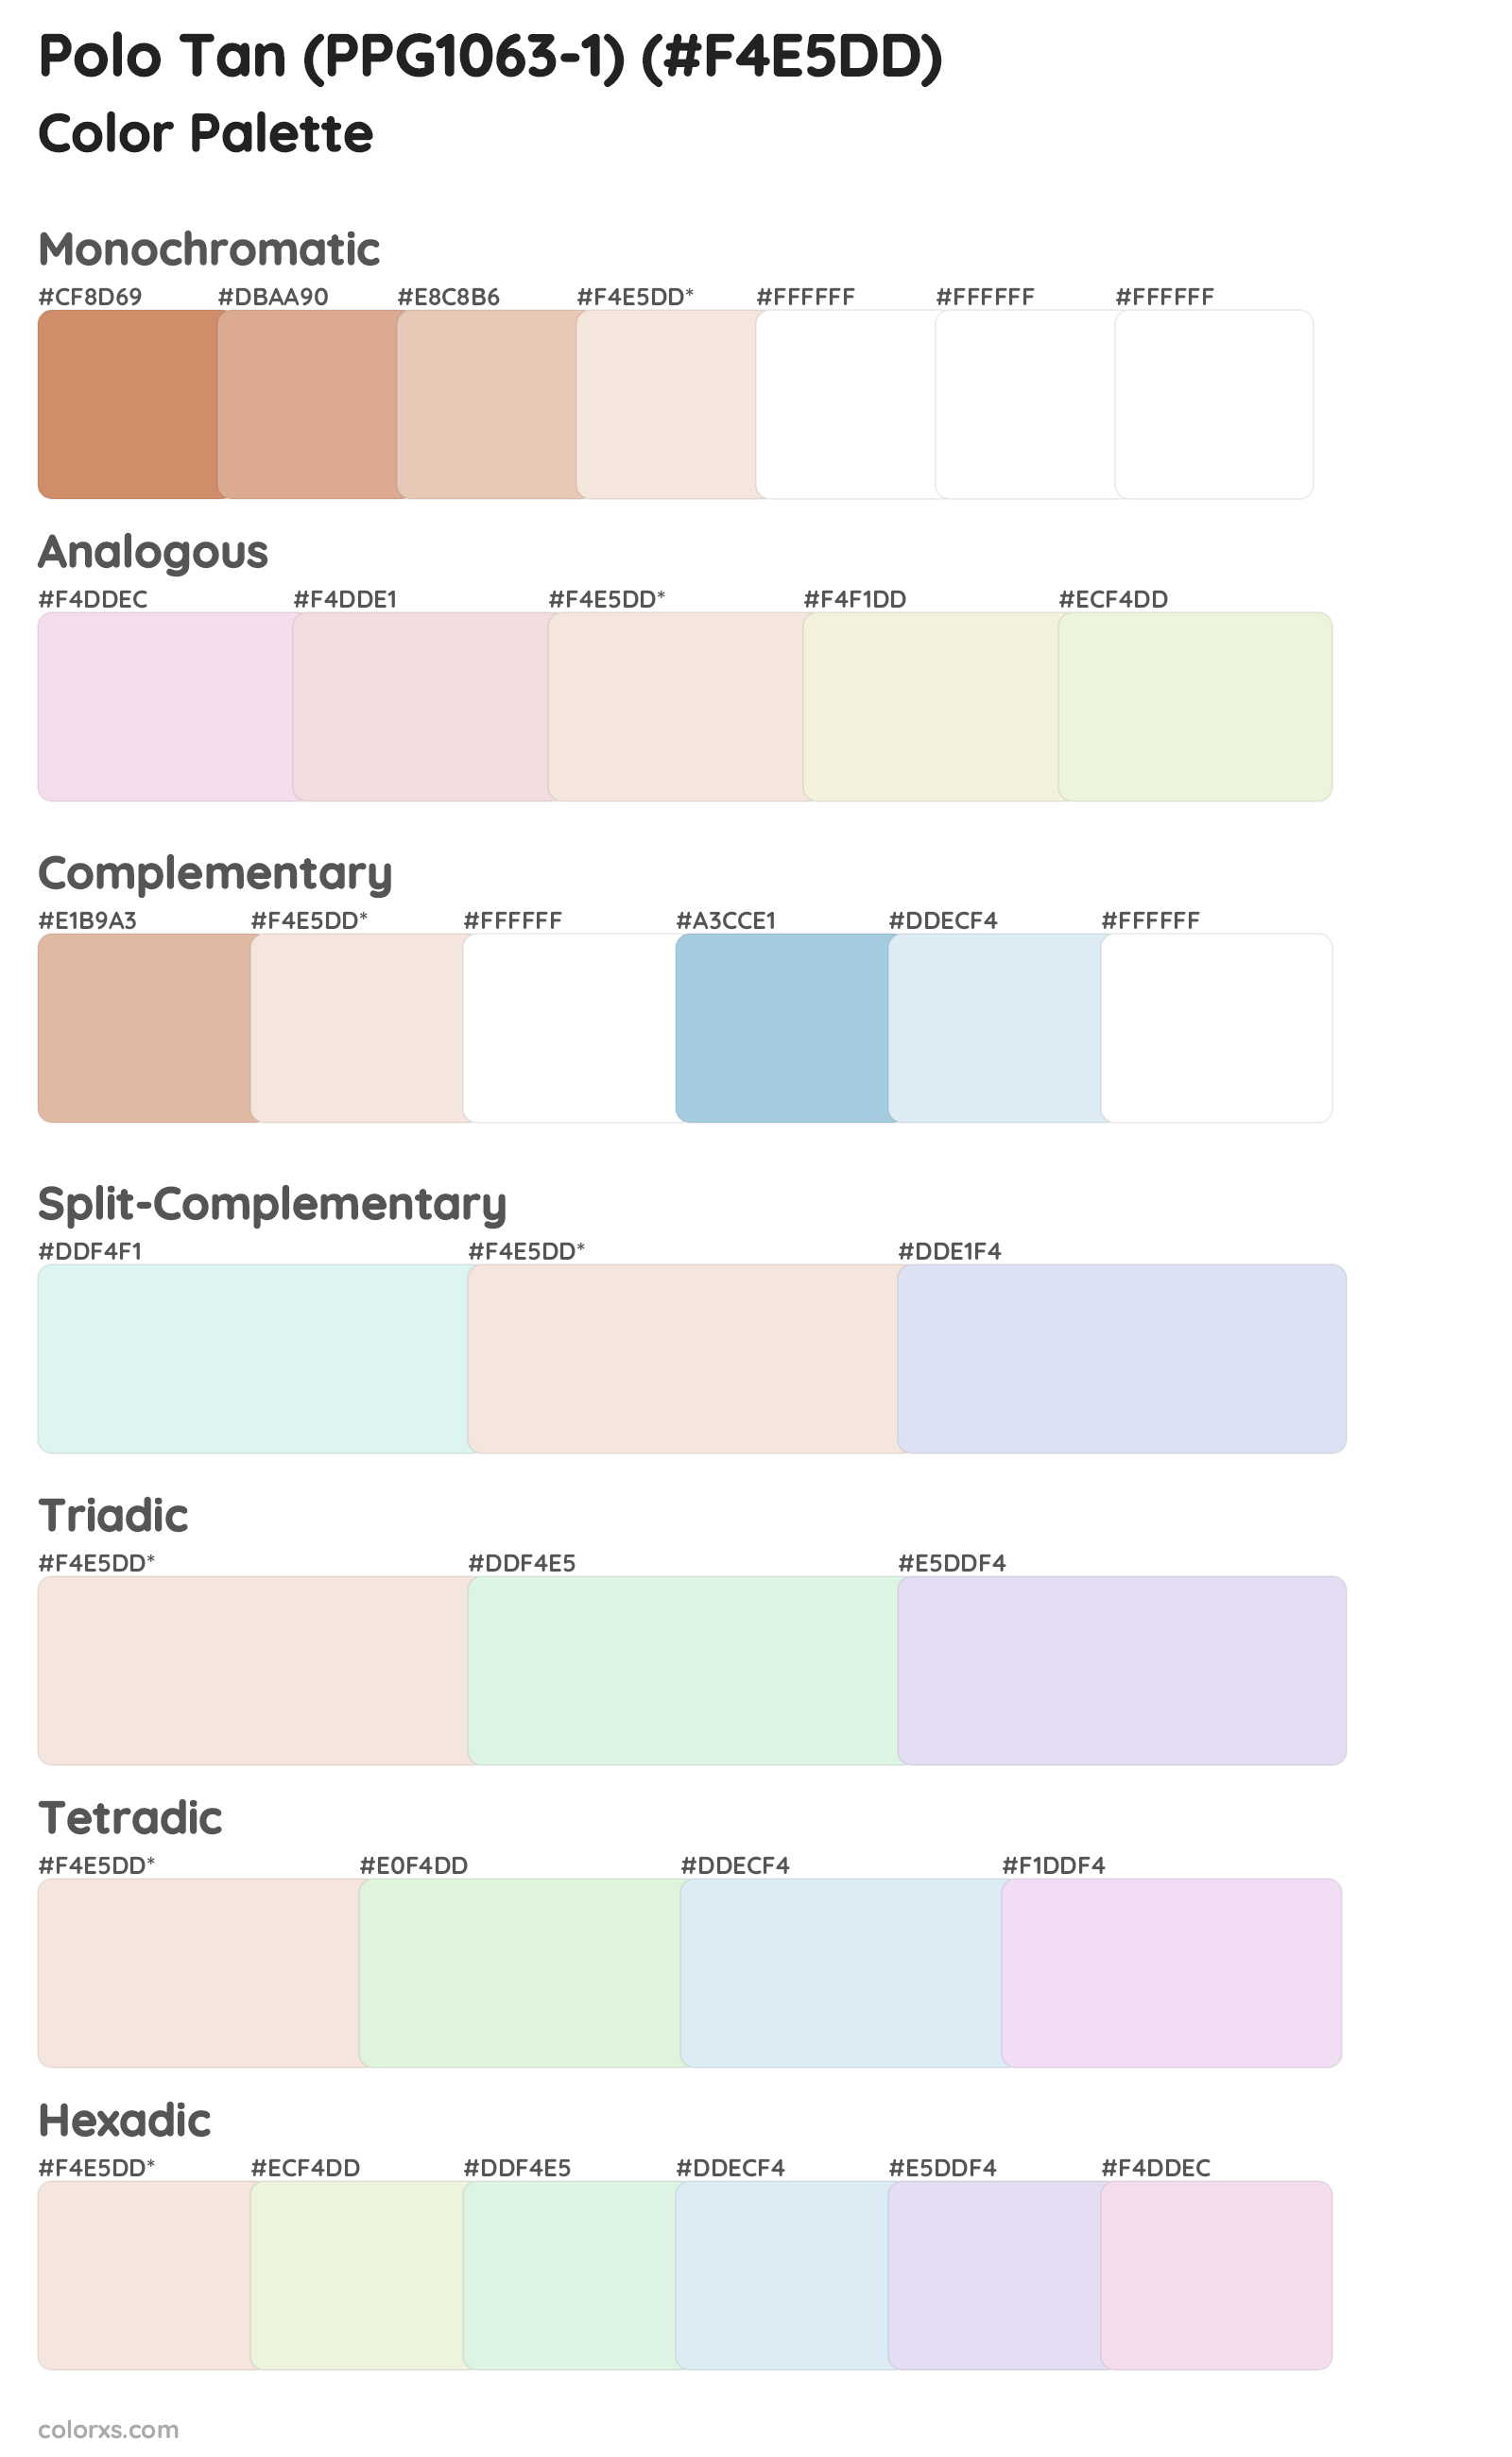 Polo Tan (PPG1063-1) Color Scheme Palettes